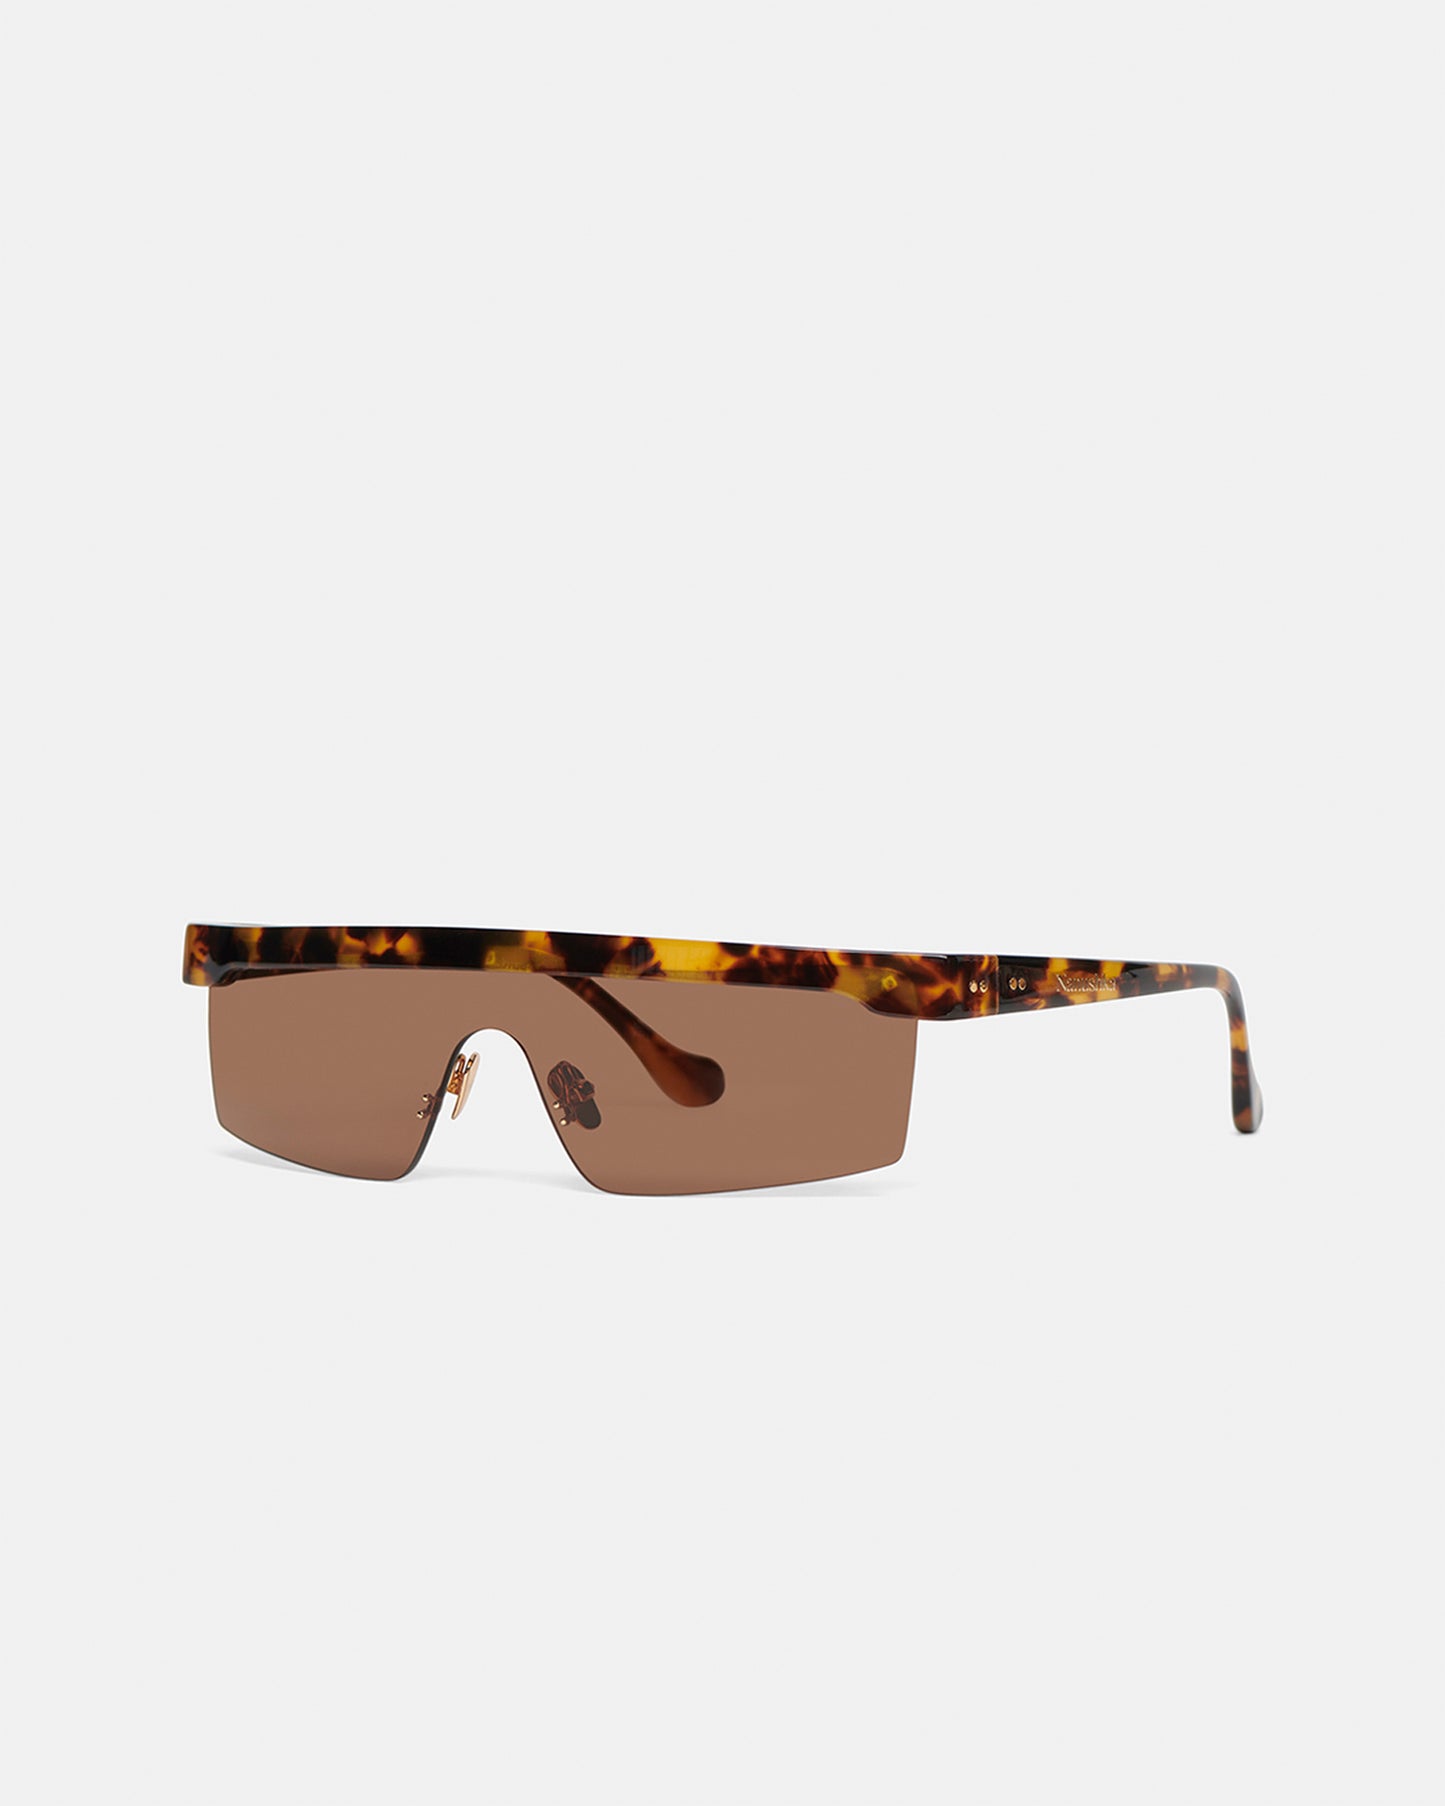 Callias - Bio-Plastic Sunglasses - Dark Amber